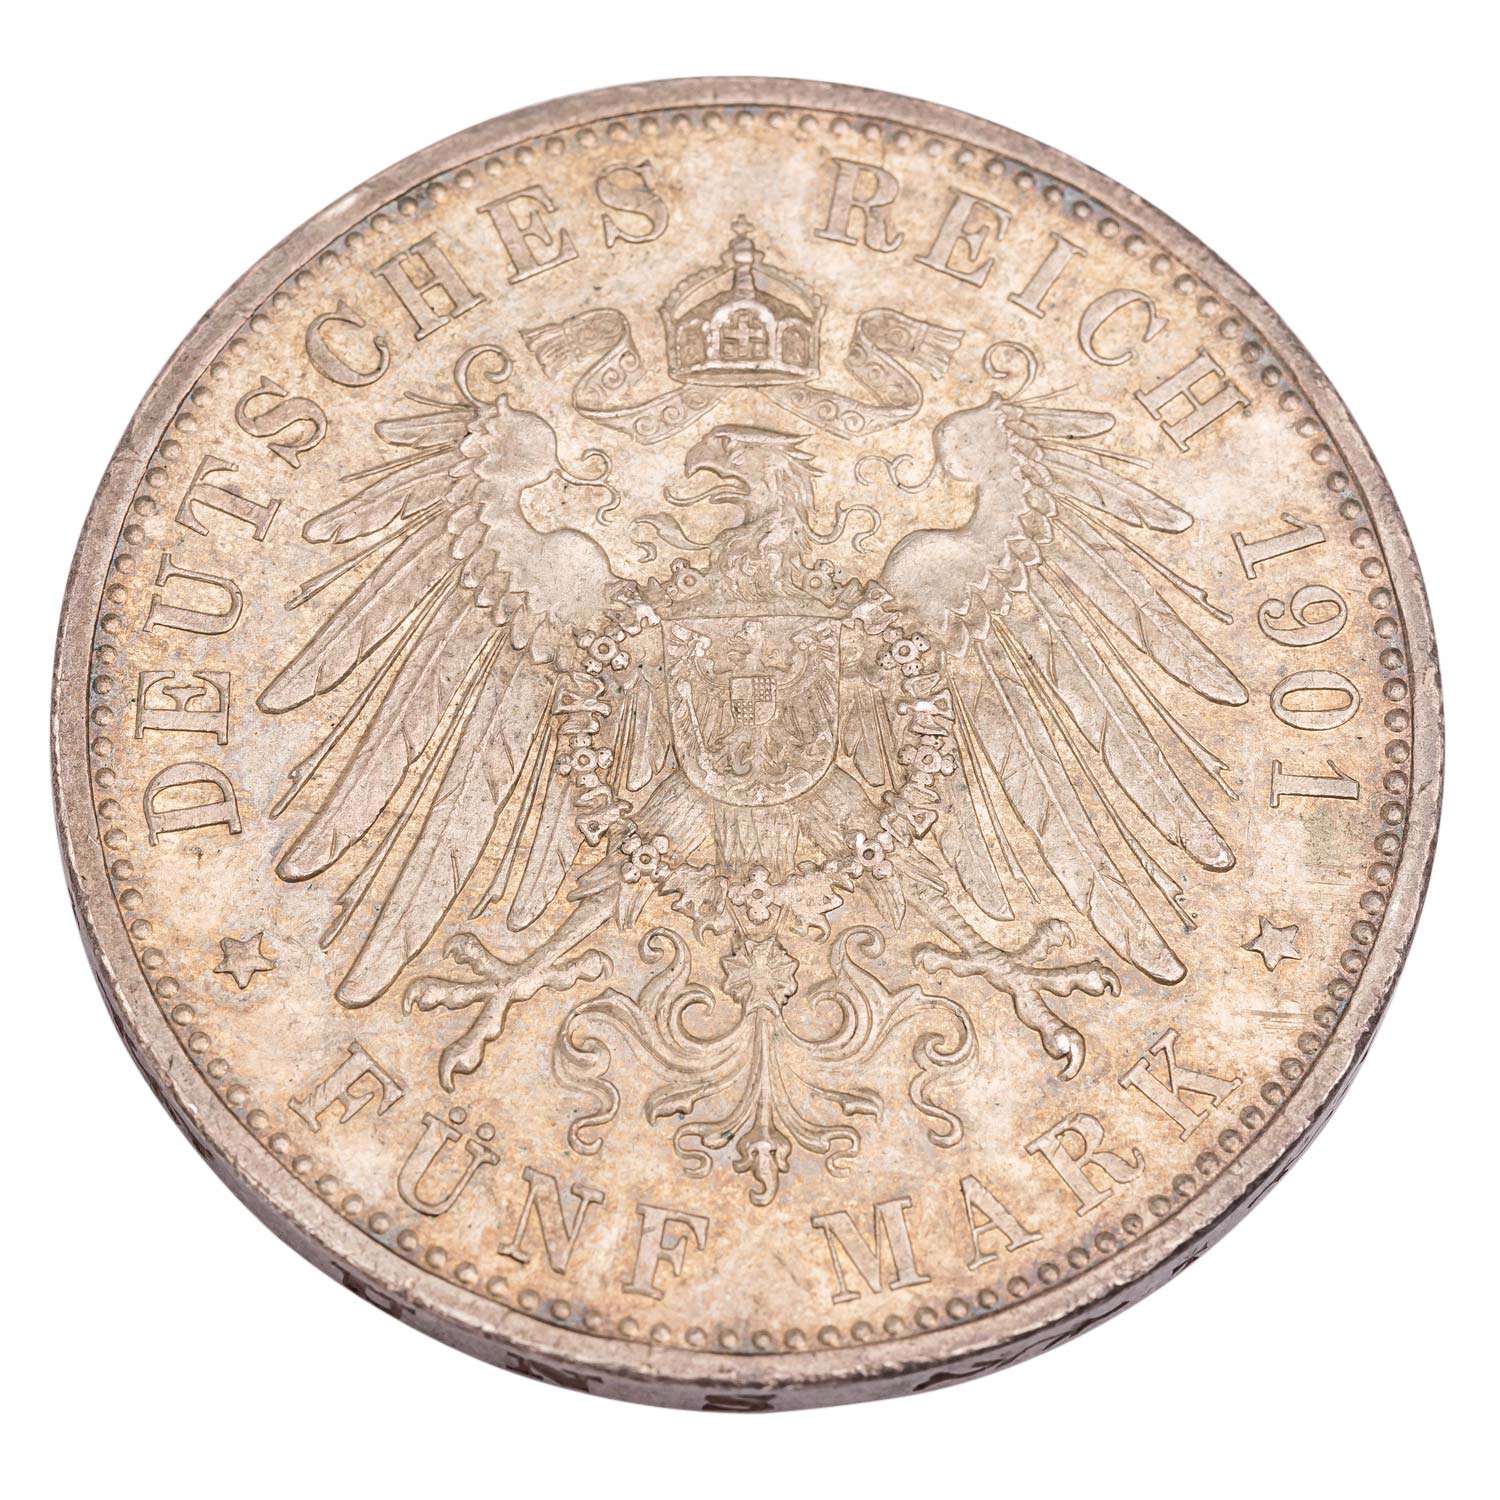 Herzogtum Sachsen-Meinungen/Silber - 5 Mark 1901/D, Georg II., - Image 2 of 3